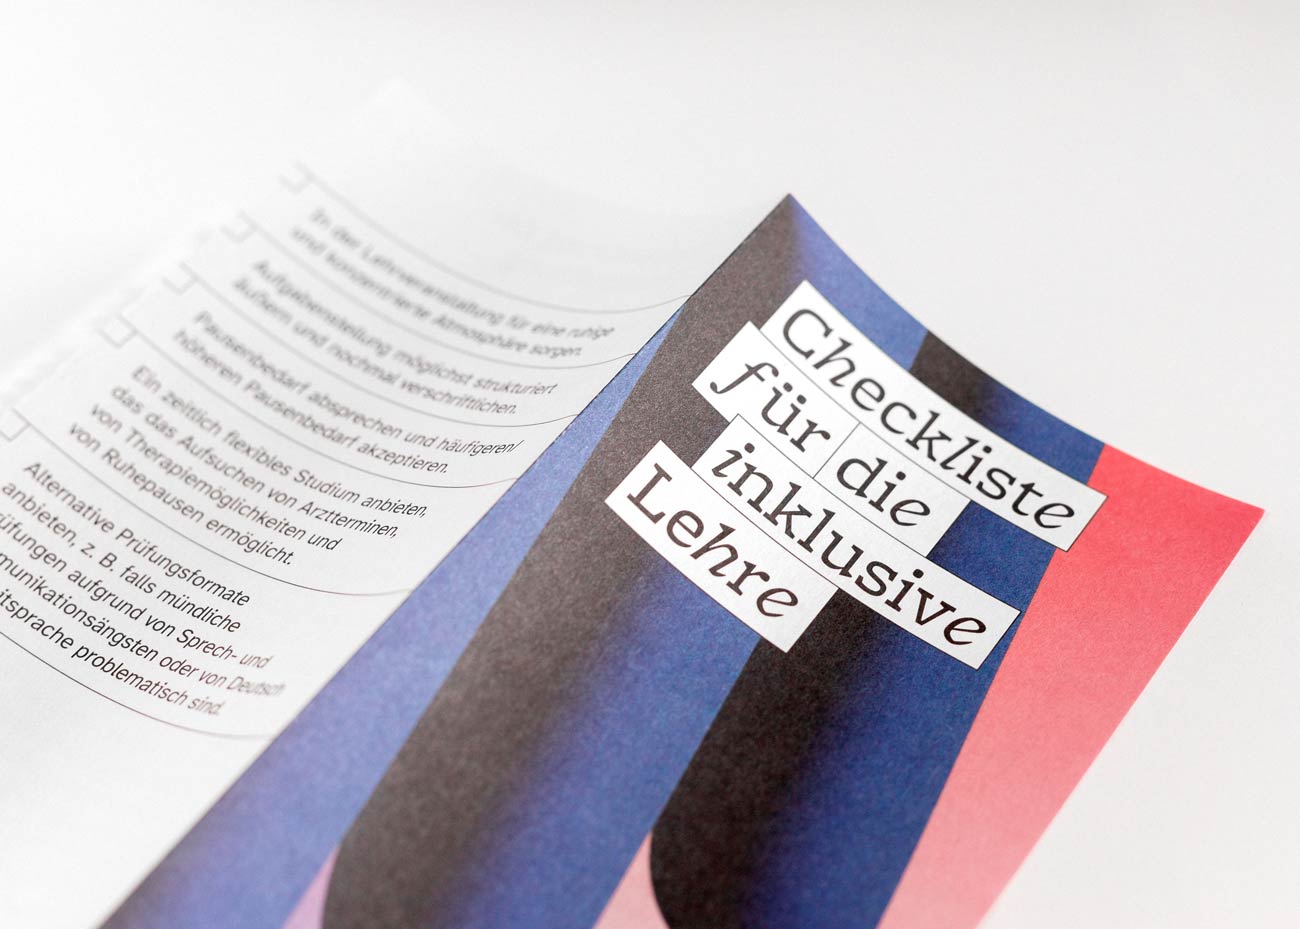 Detailaufnahme des Cover des Falz-Flyers mit dem Titel „Checkliste für die inklusive Lehre“.